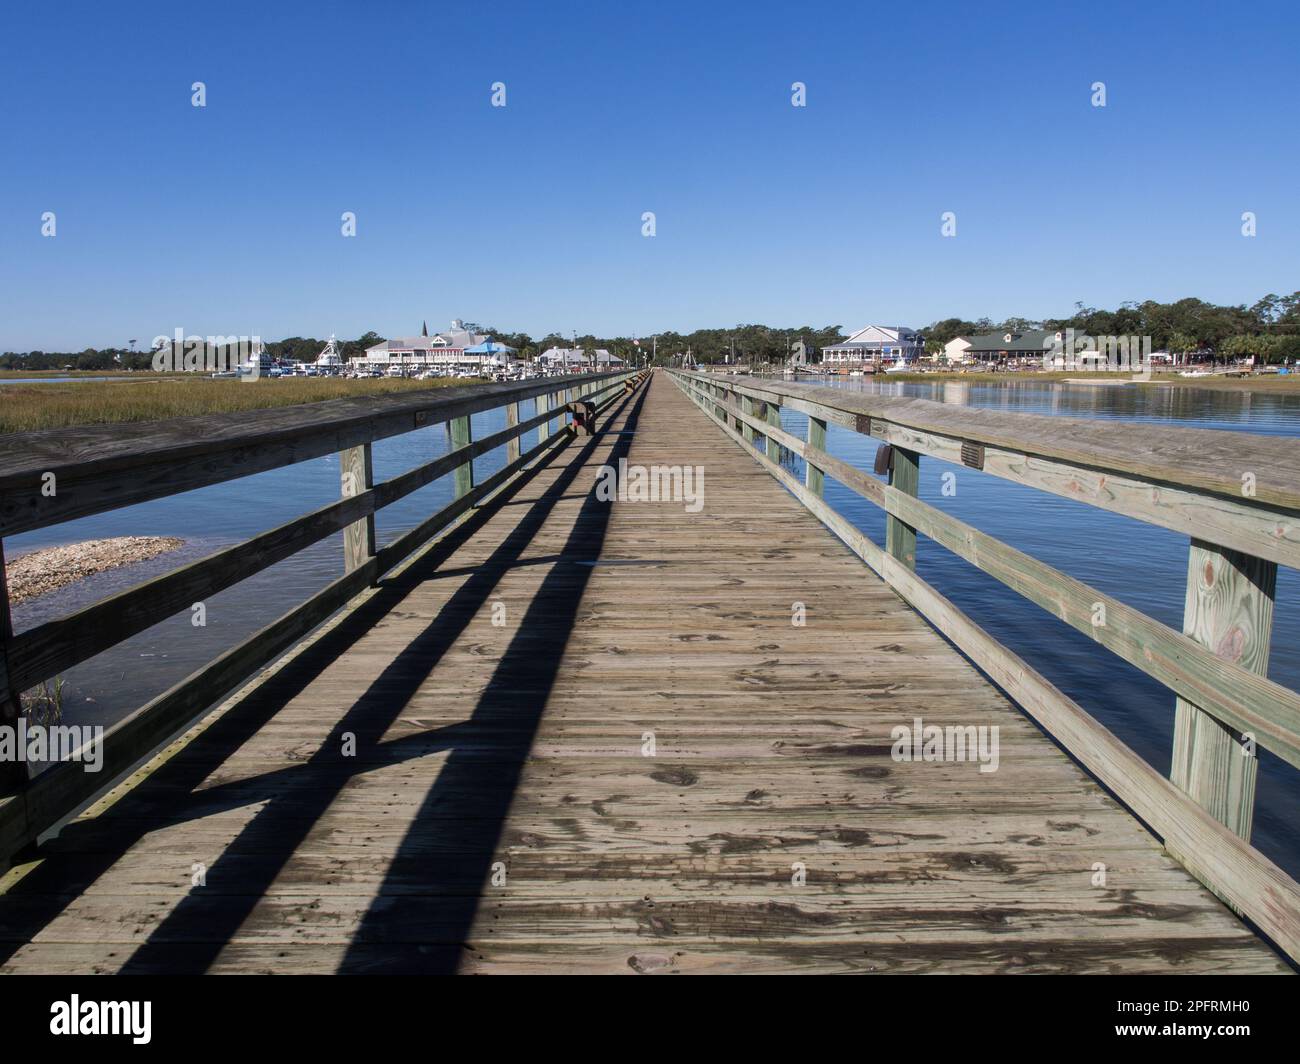 Der lange hölzerne Pier in Murrell's Inlet, südlich von Myrtle Beach in South Carolina, ist eine beliebte Touristenattraktion, die einen atemberaubenden Ausblick bietet Stockfoto